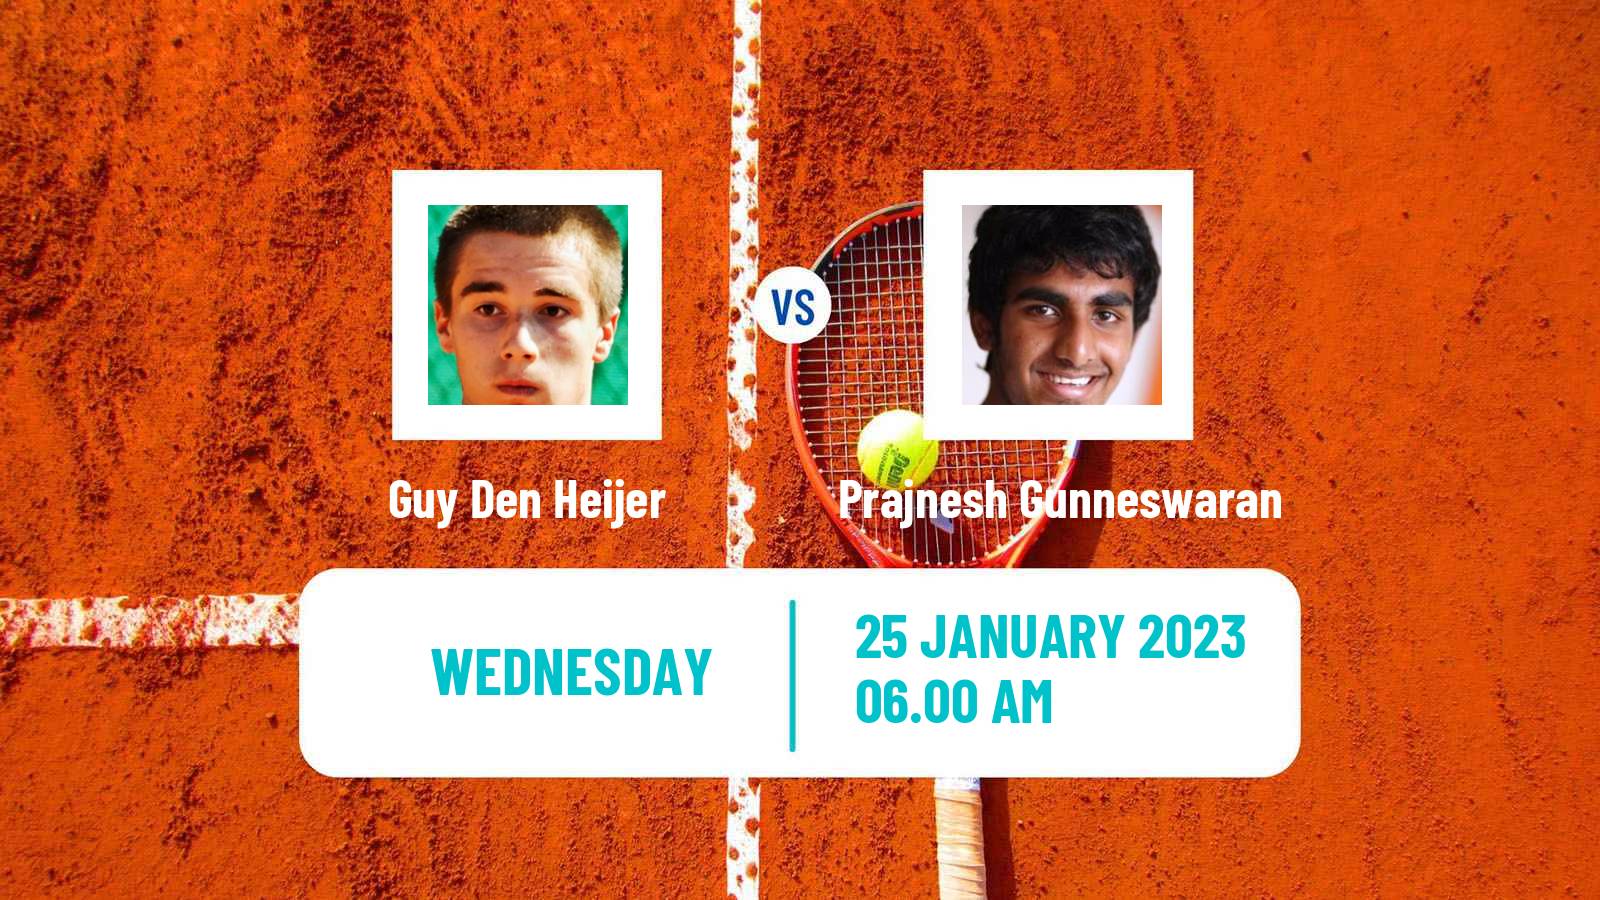 Tennis ITF Tournaments Guy Den Heijer - Prajnesh Gunneswaran